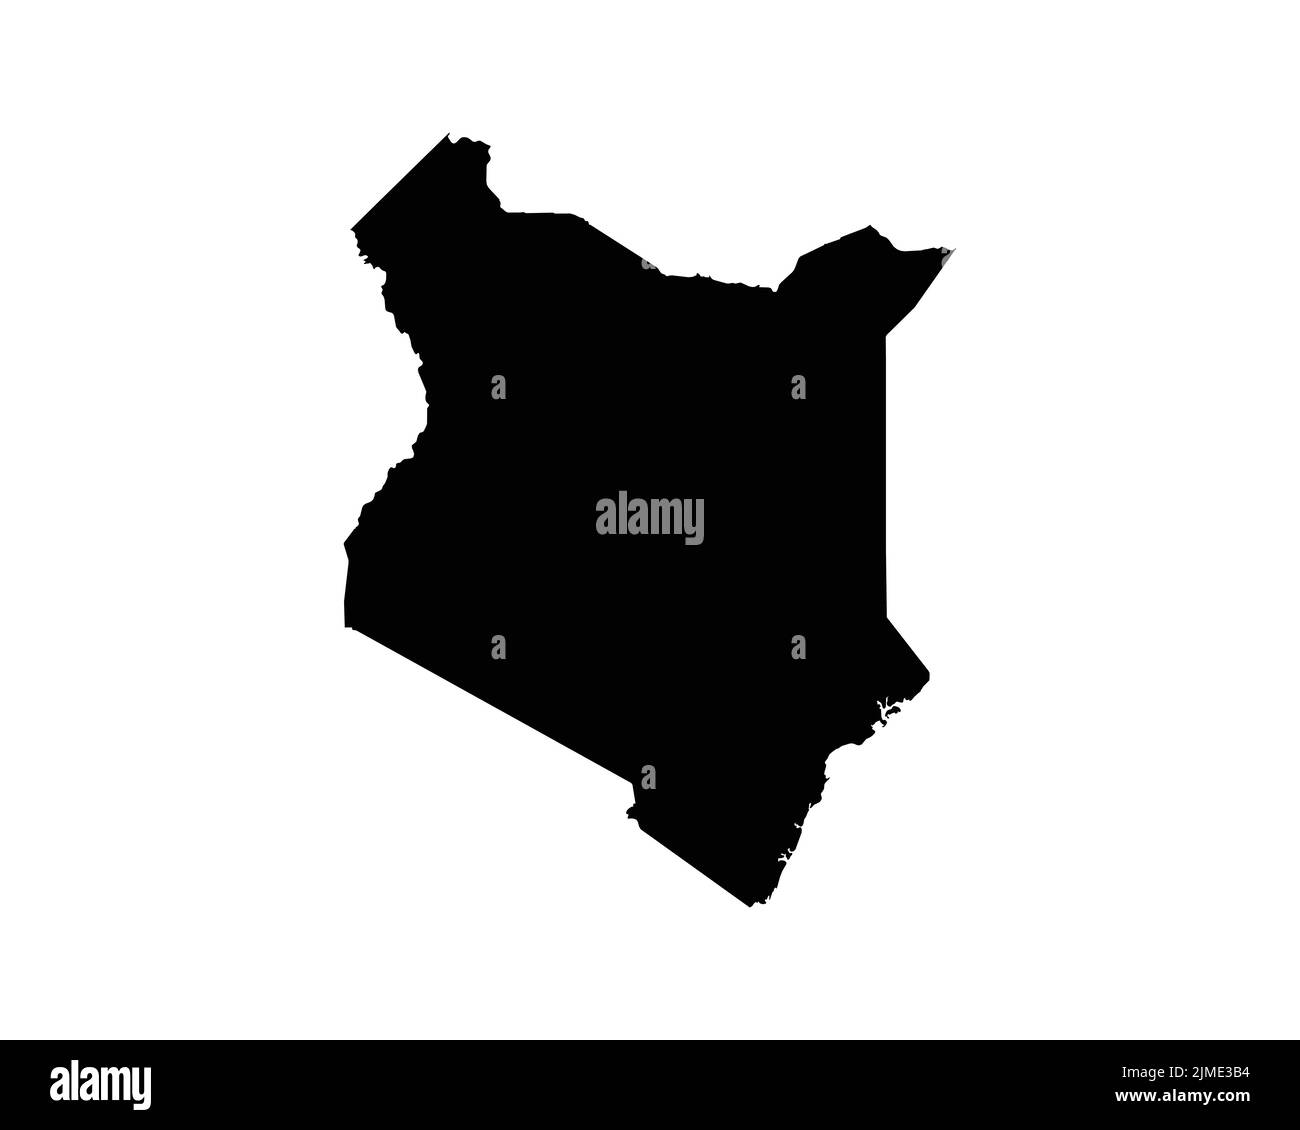 Kenia-Karte. Kenianische Landkarte. Schwarz-Weiß National Nation Gliederung Geographie Grenze Grenzform Territorium Vektor Illustration EPS Clipart Stock Vektor